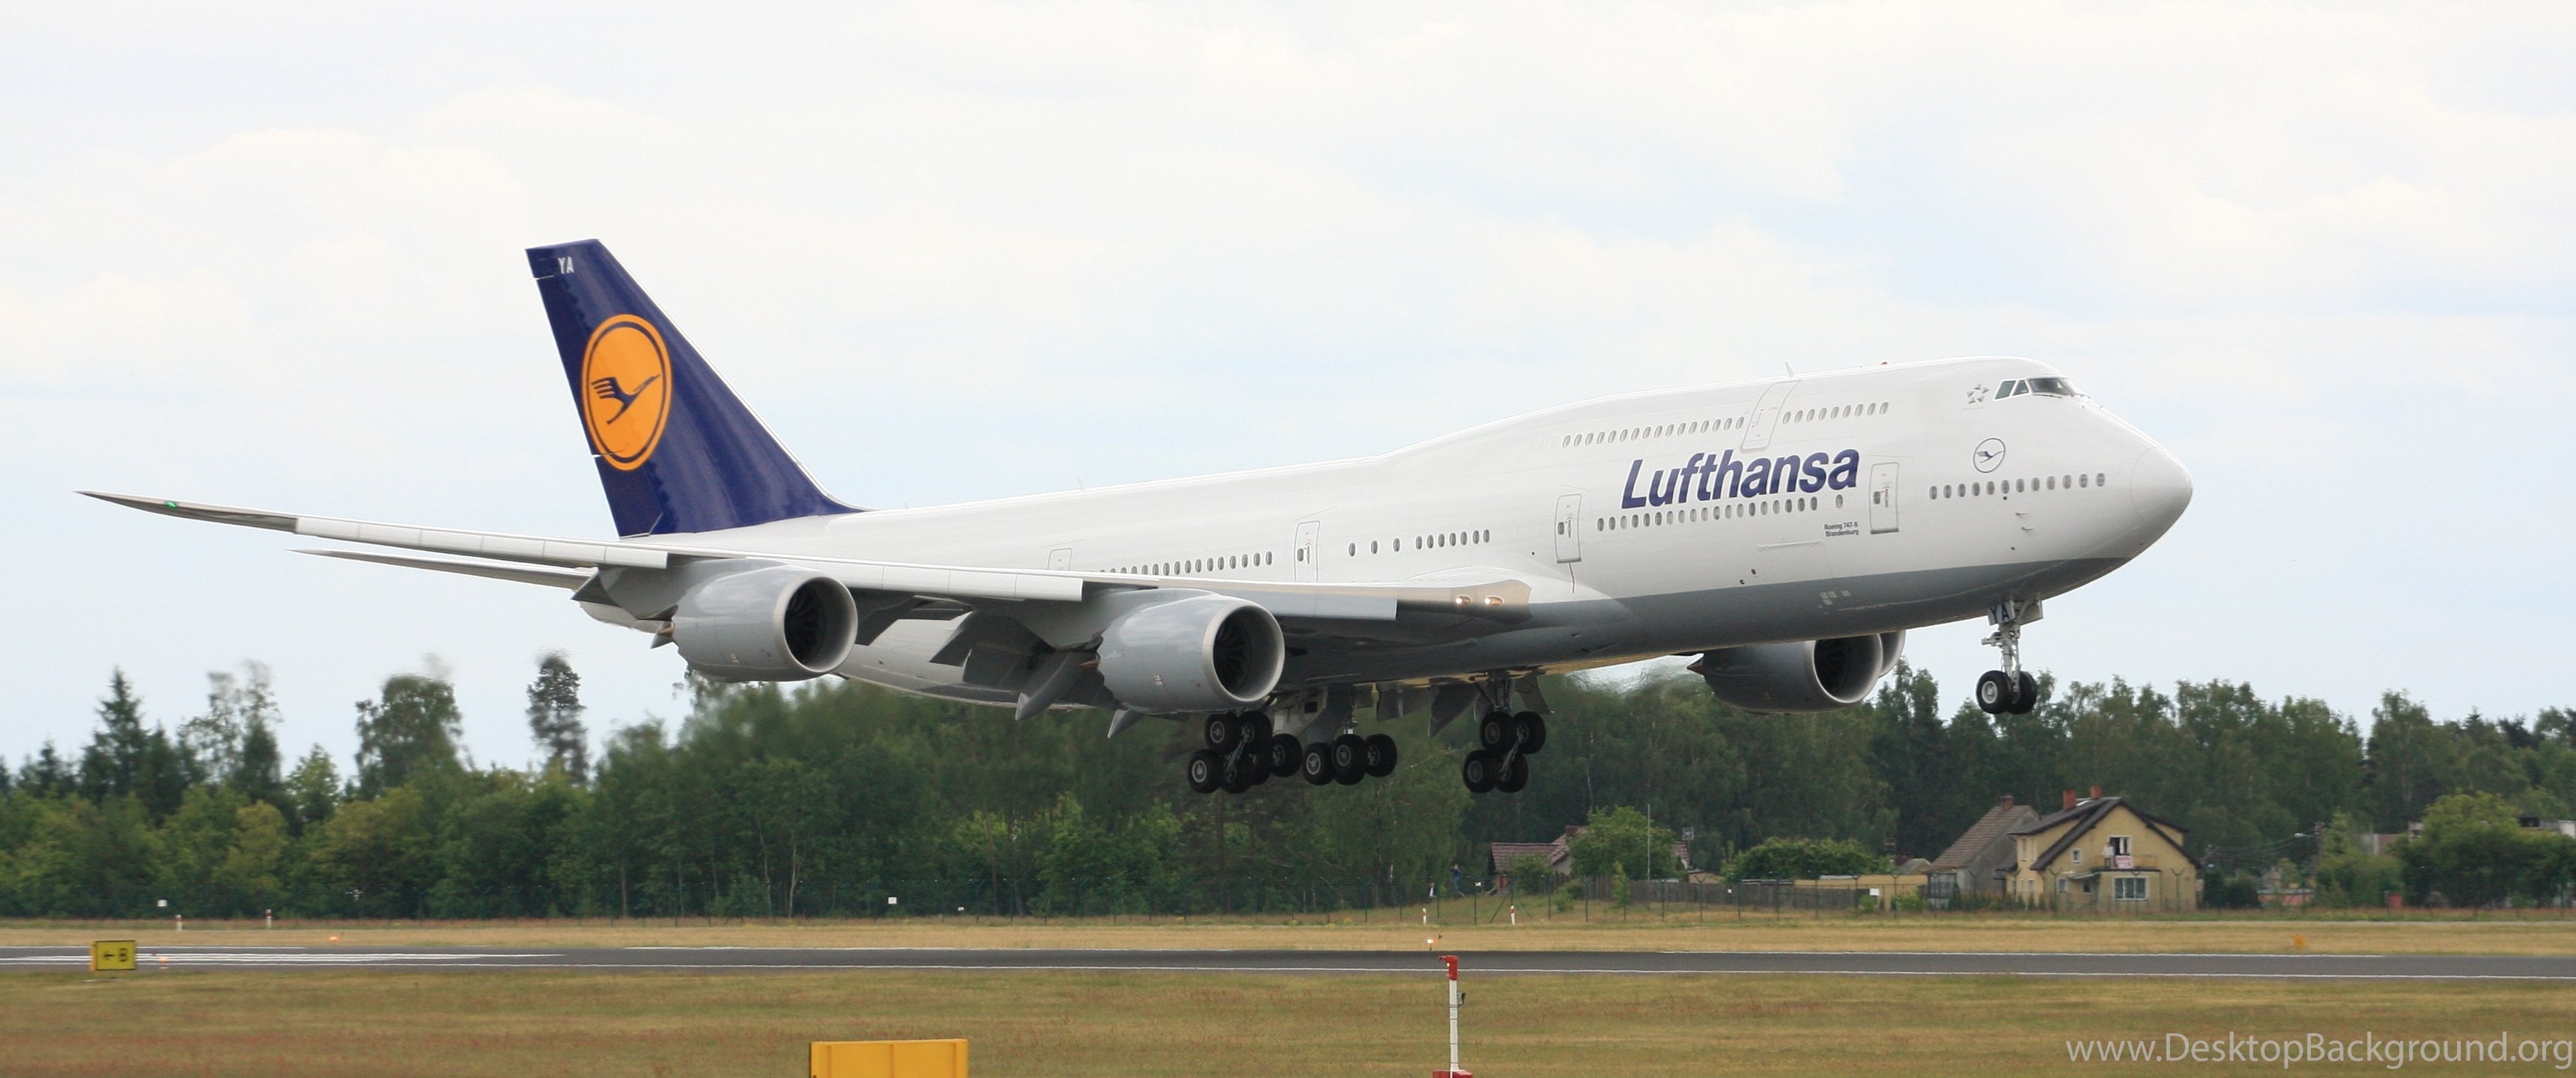 Widescreen - Lufthansa 747 8 4k , HD Wallpaper & Backgrounds